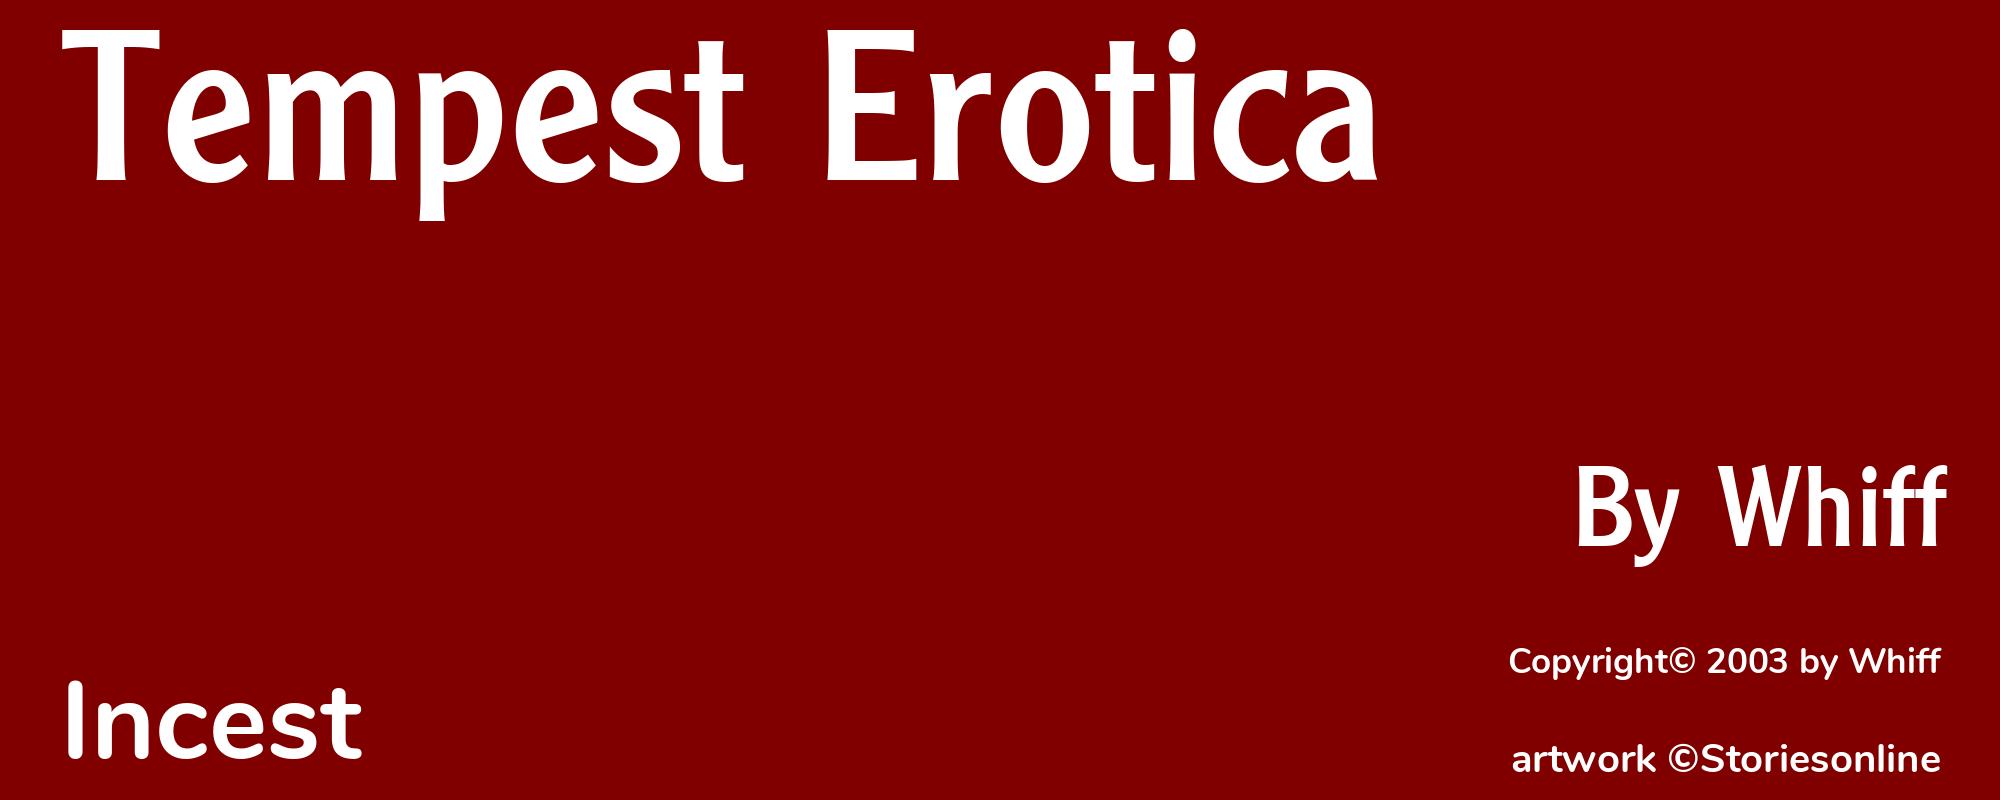 Tempest Erotica - Cover